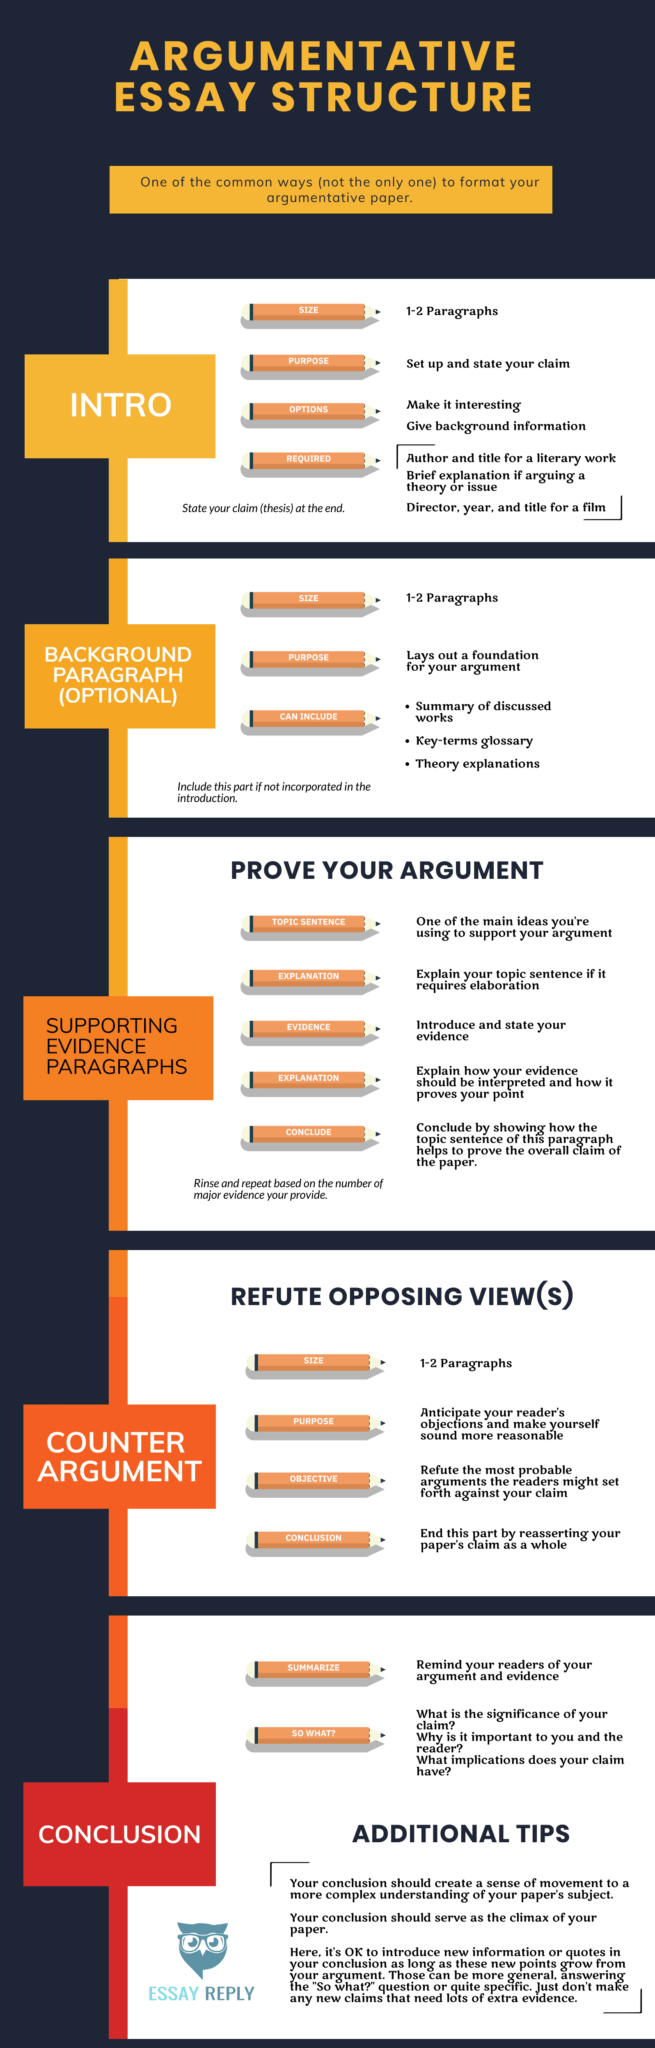 characteristics of argumentative essay refutes